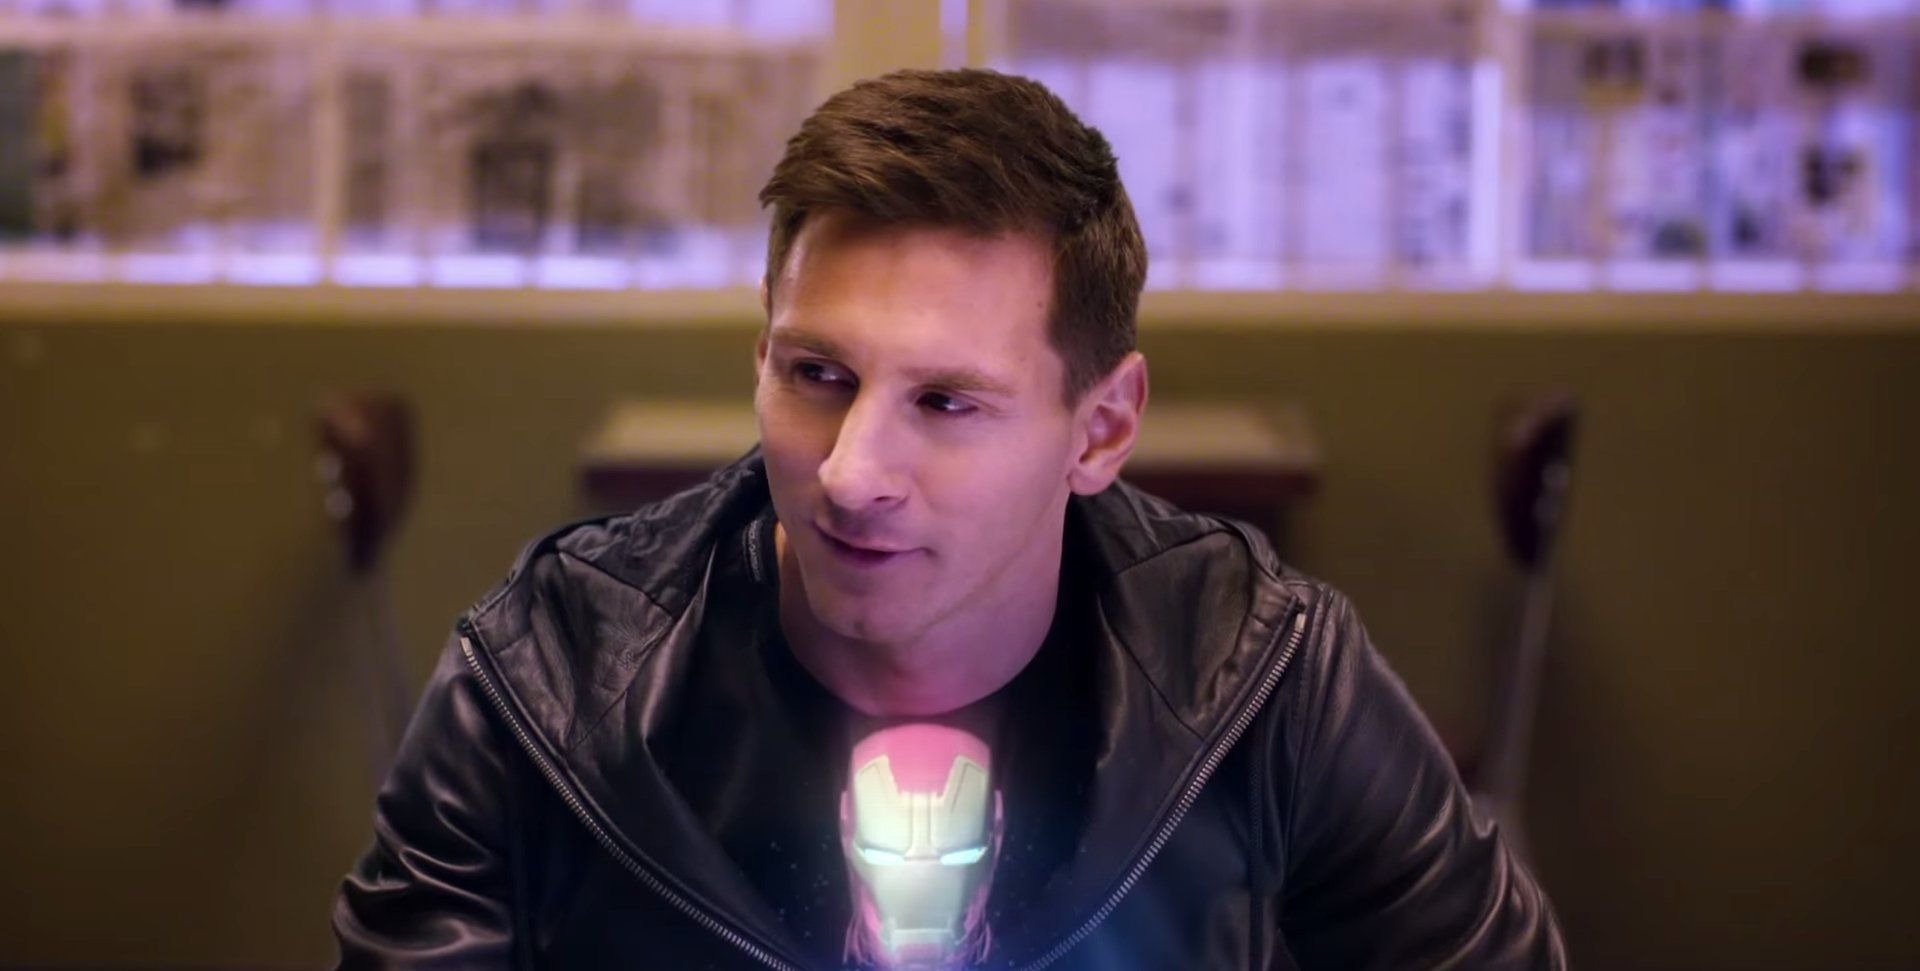 Messi dans une pub Samsung Galaxy S6 / Avengers